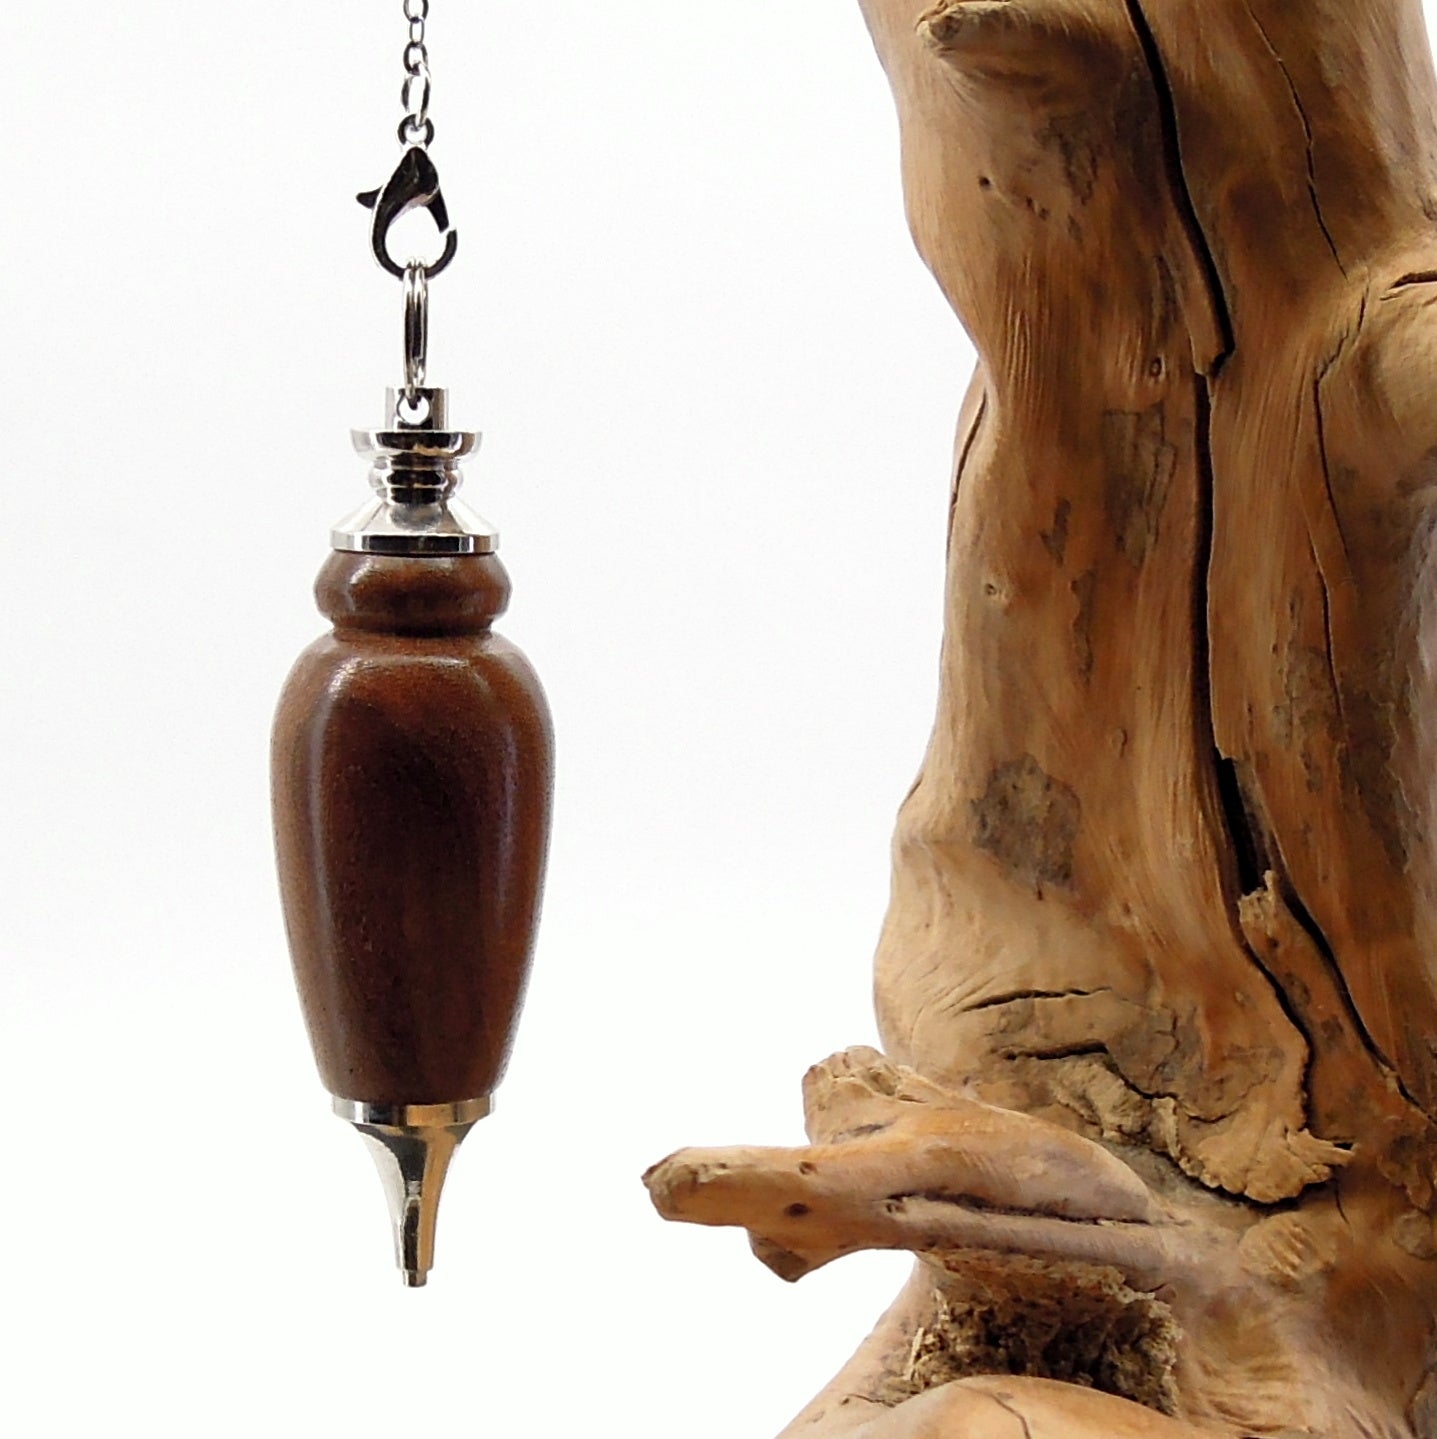 Pendule artisanal de radiesthésie en orme avec chainette et monture métal.